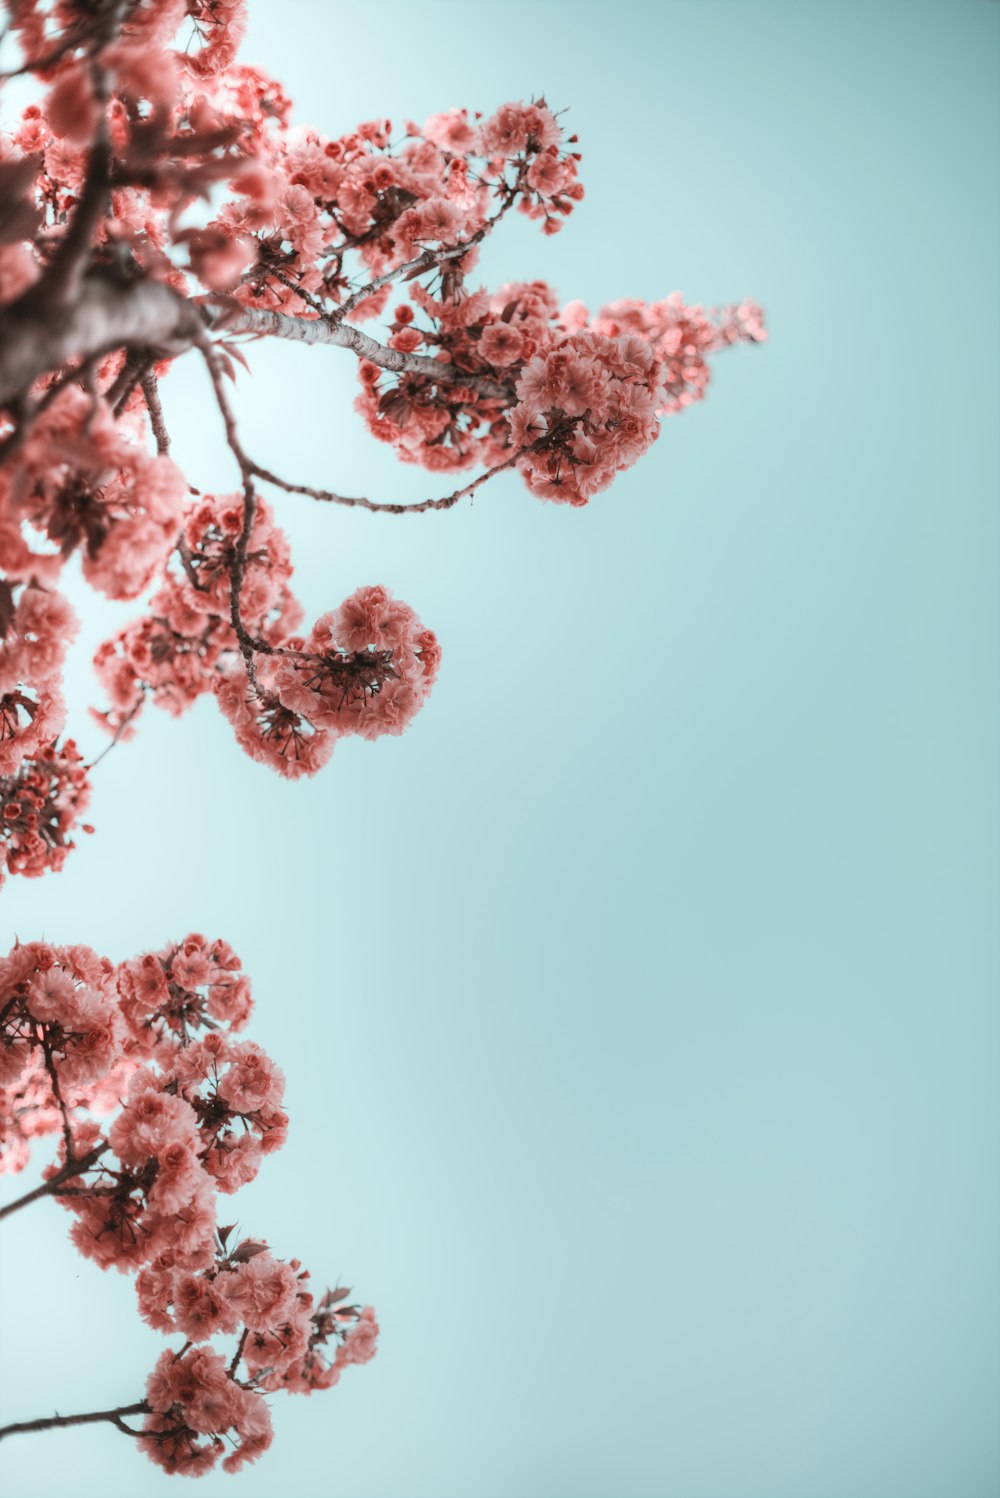 fotografia seletiva de ramos com flor